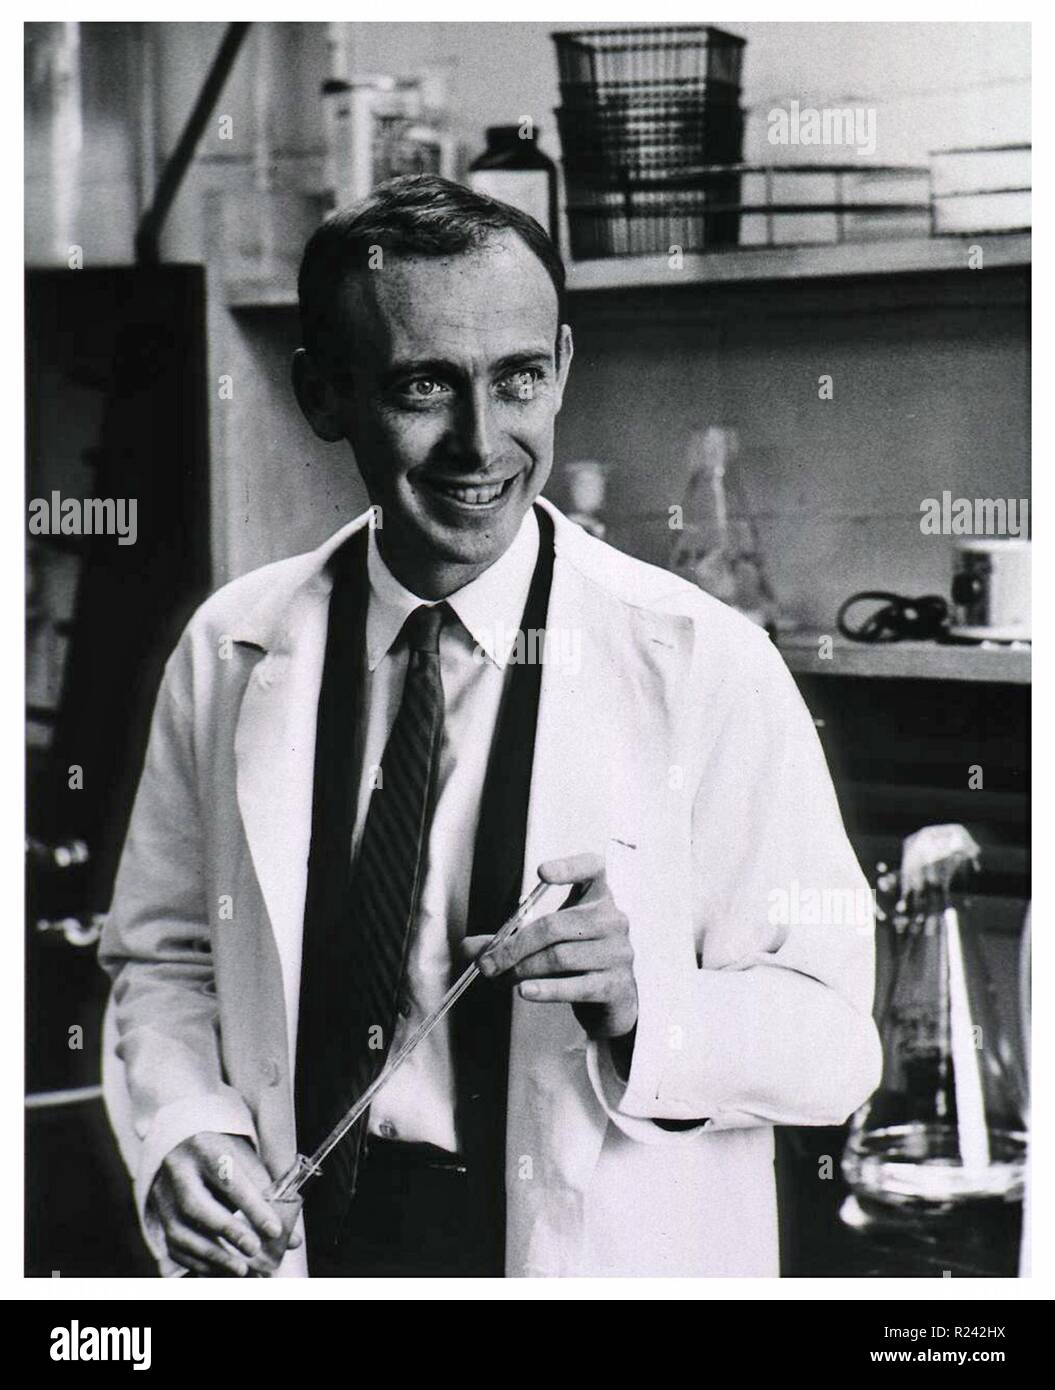 Photographie de James Watson (1928-) un biologiste moléculaire américain, zoologiste et généticien, connu comme l'un des co-découvreurs de la structure de l'ADN en 1953 par Francis Crick. Datée 1953 Banque D'Images